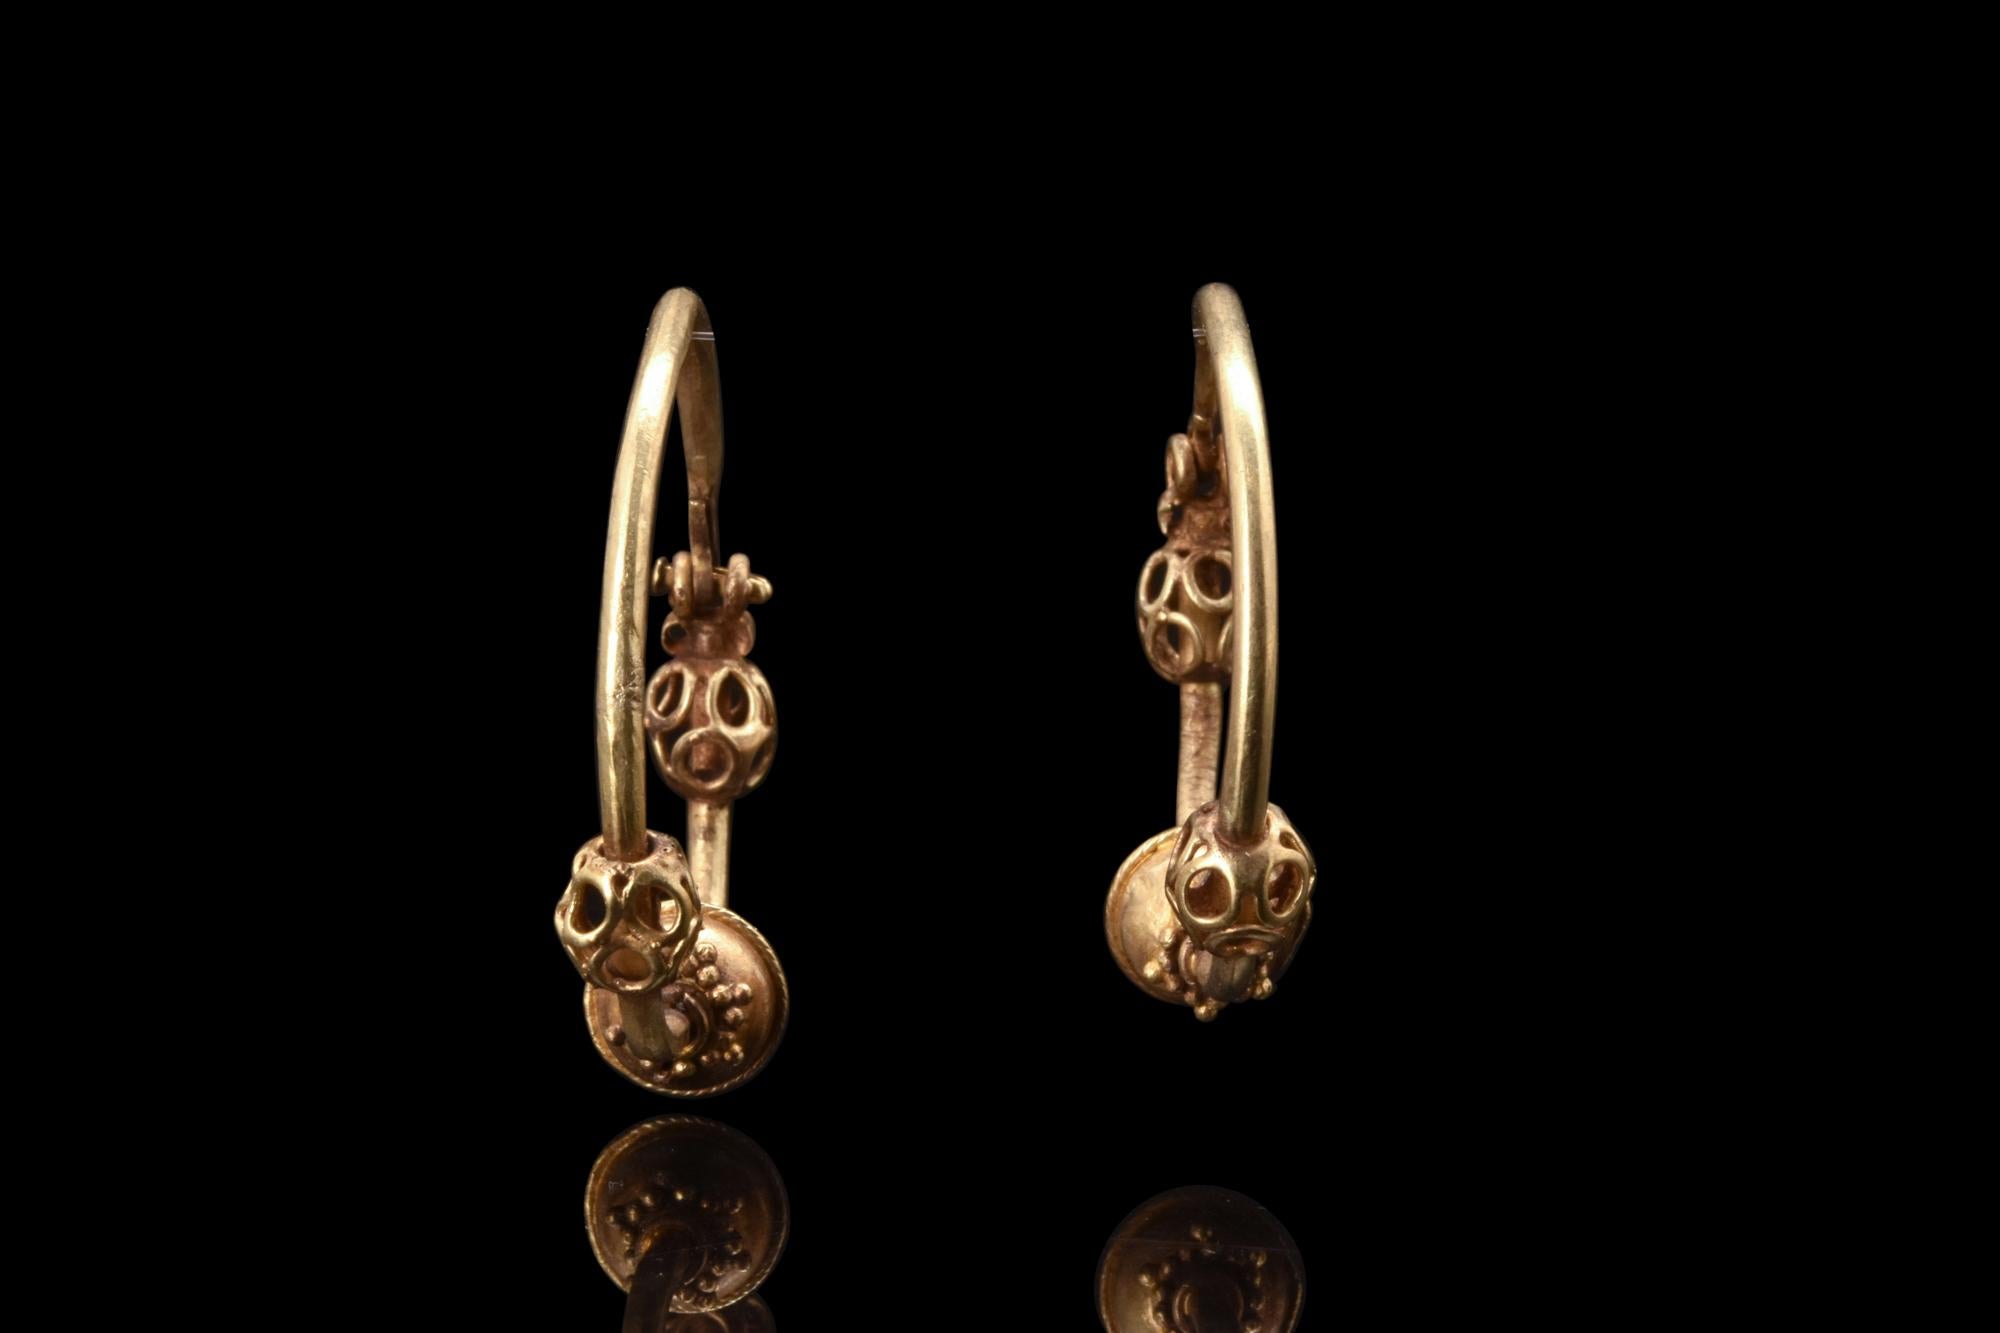 Paire de boucles d'oreilles en or byzantin assorties, fermées par un crochet et un œil. Ces boucles d'oreilles exquises présentent trois éléments décoratifs sphériques suspendus le long de chaque boucle. Au centre, une boule dont les bords sont